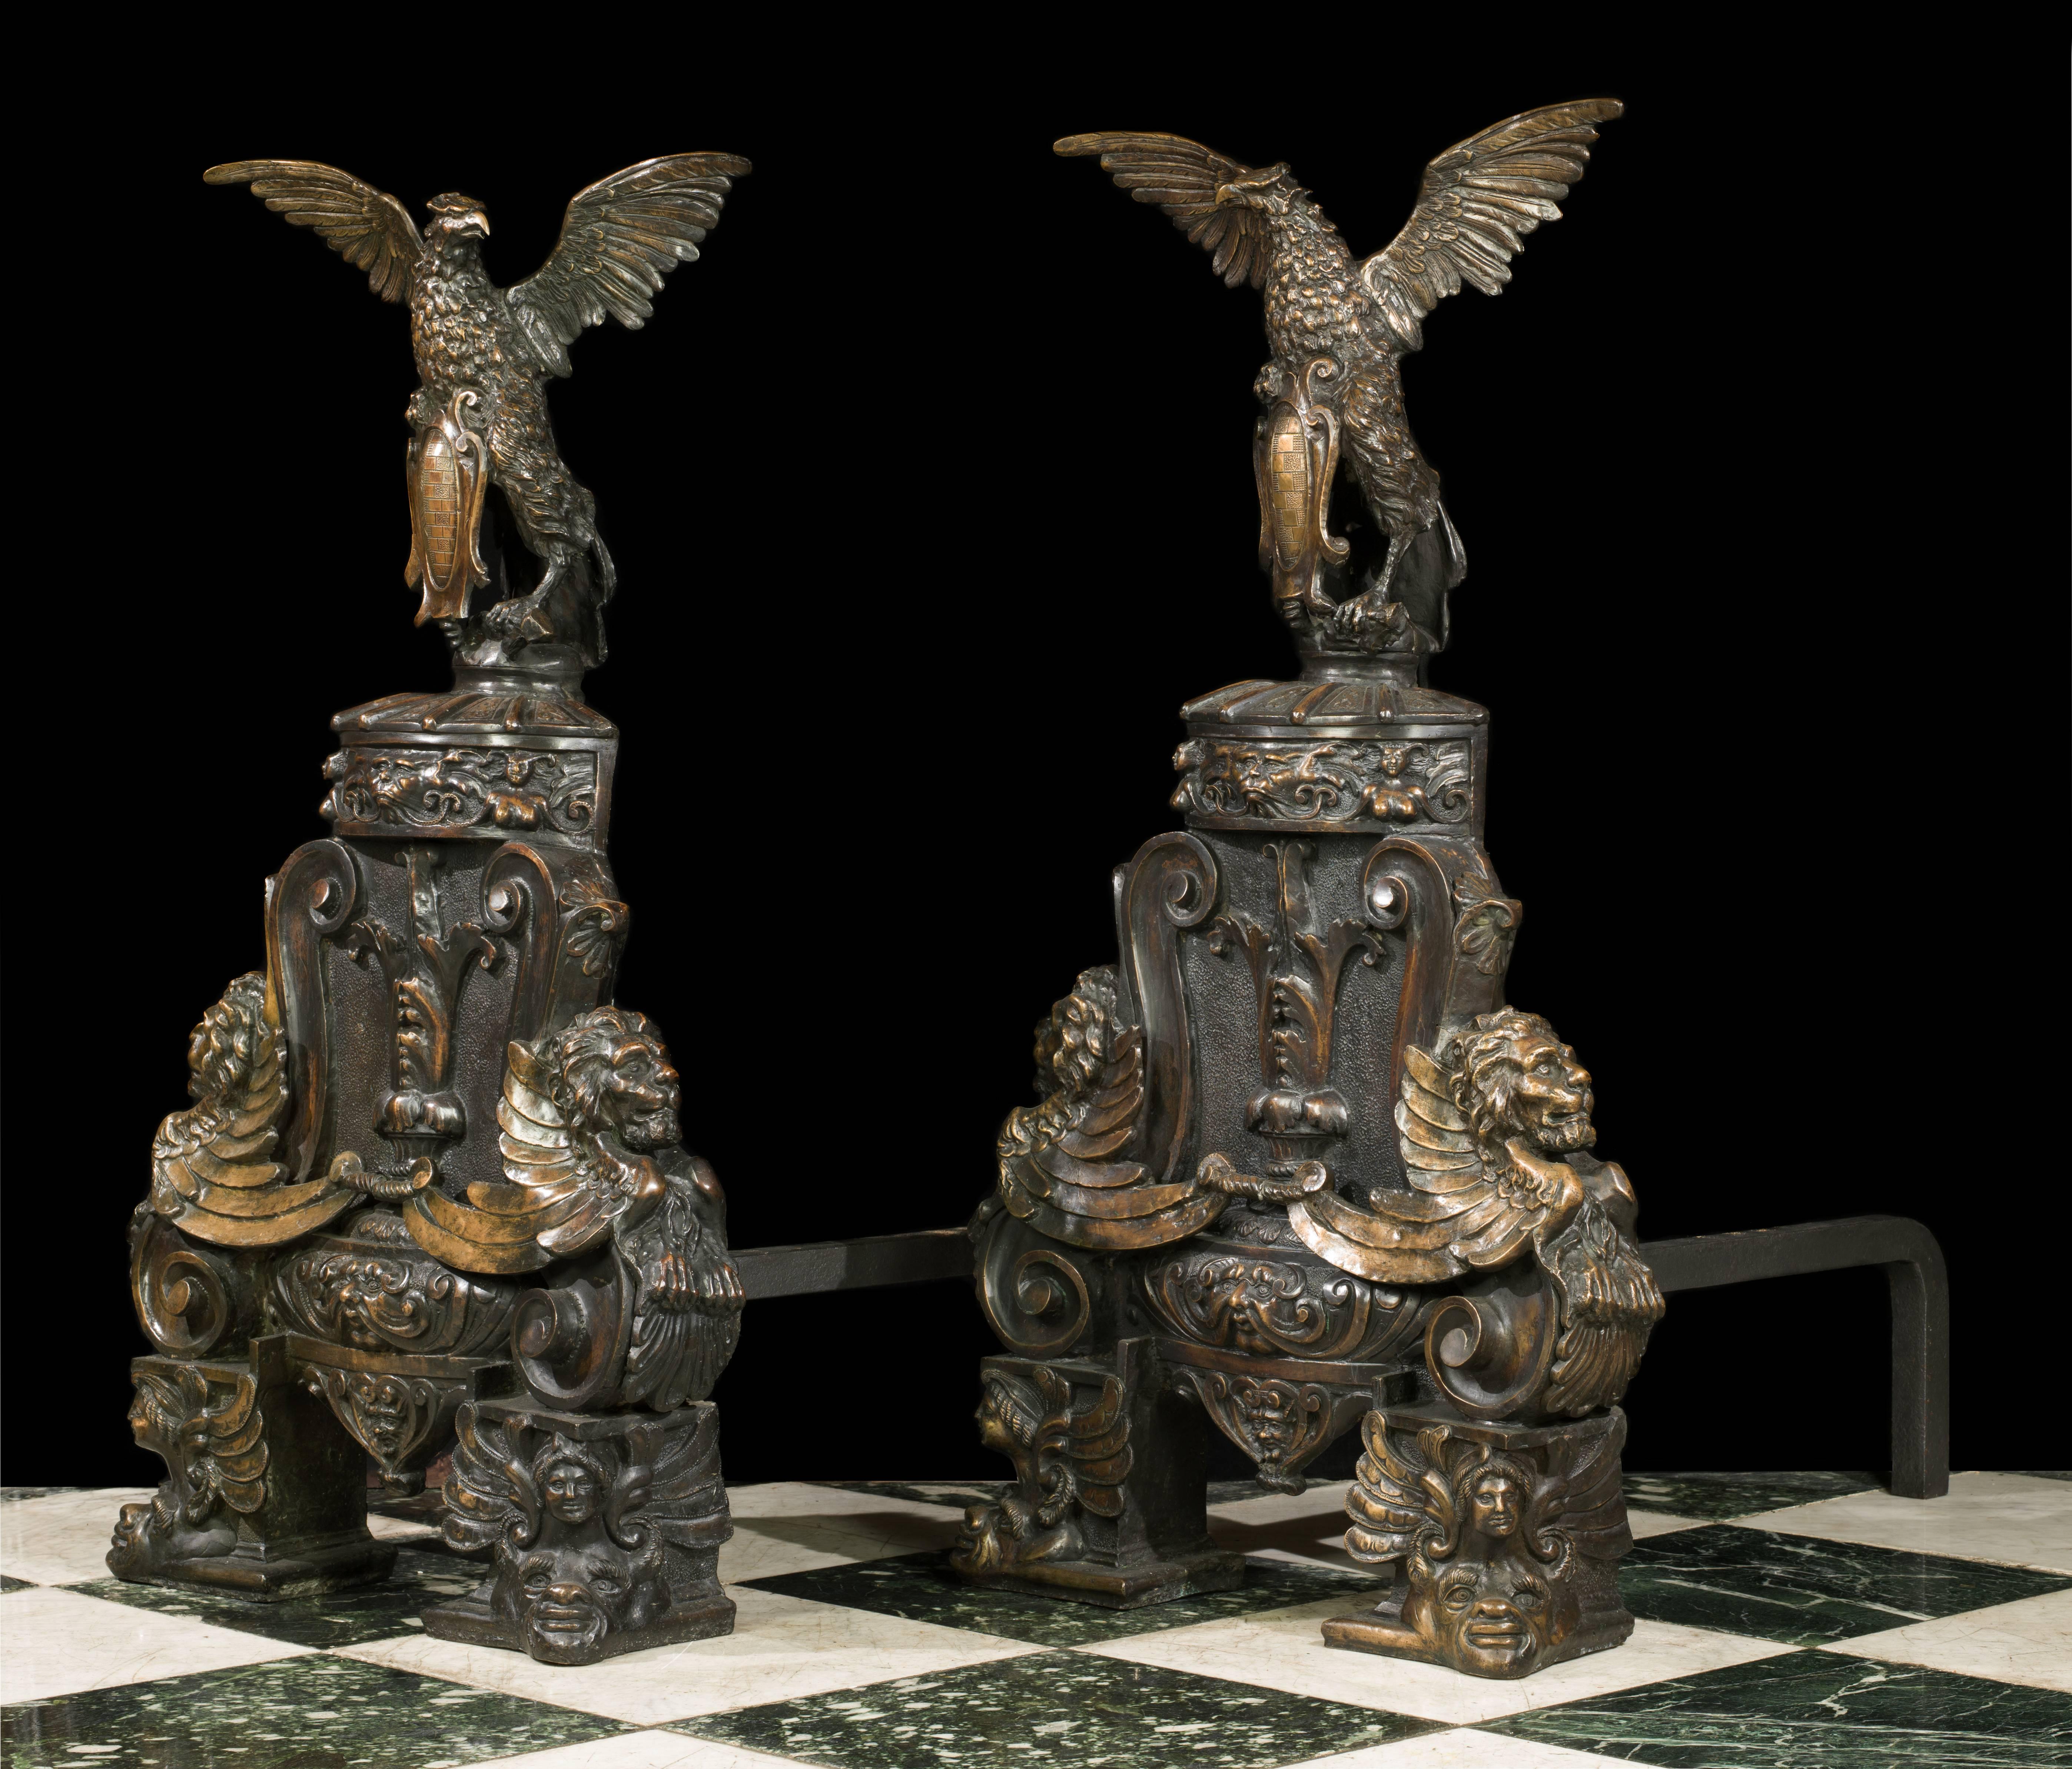 Ein Paar riesige und ziemlich exzentrische patinierte Bronze-Andirons in der barocken Art. Sie werden jeweils von majestätischen Adlern mit ausgebreiteten Flügeln überragt, die Schilde mit verschnörkelten Kartuschen halten und auf kunstvollen